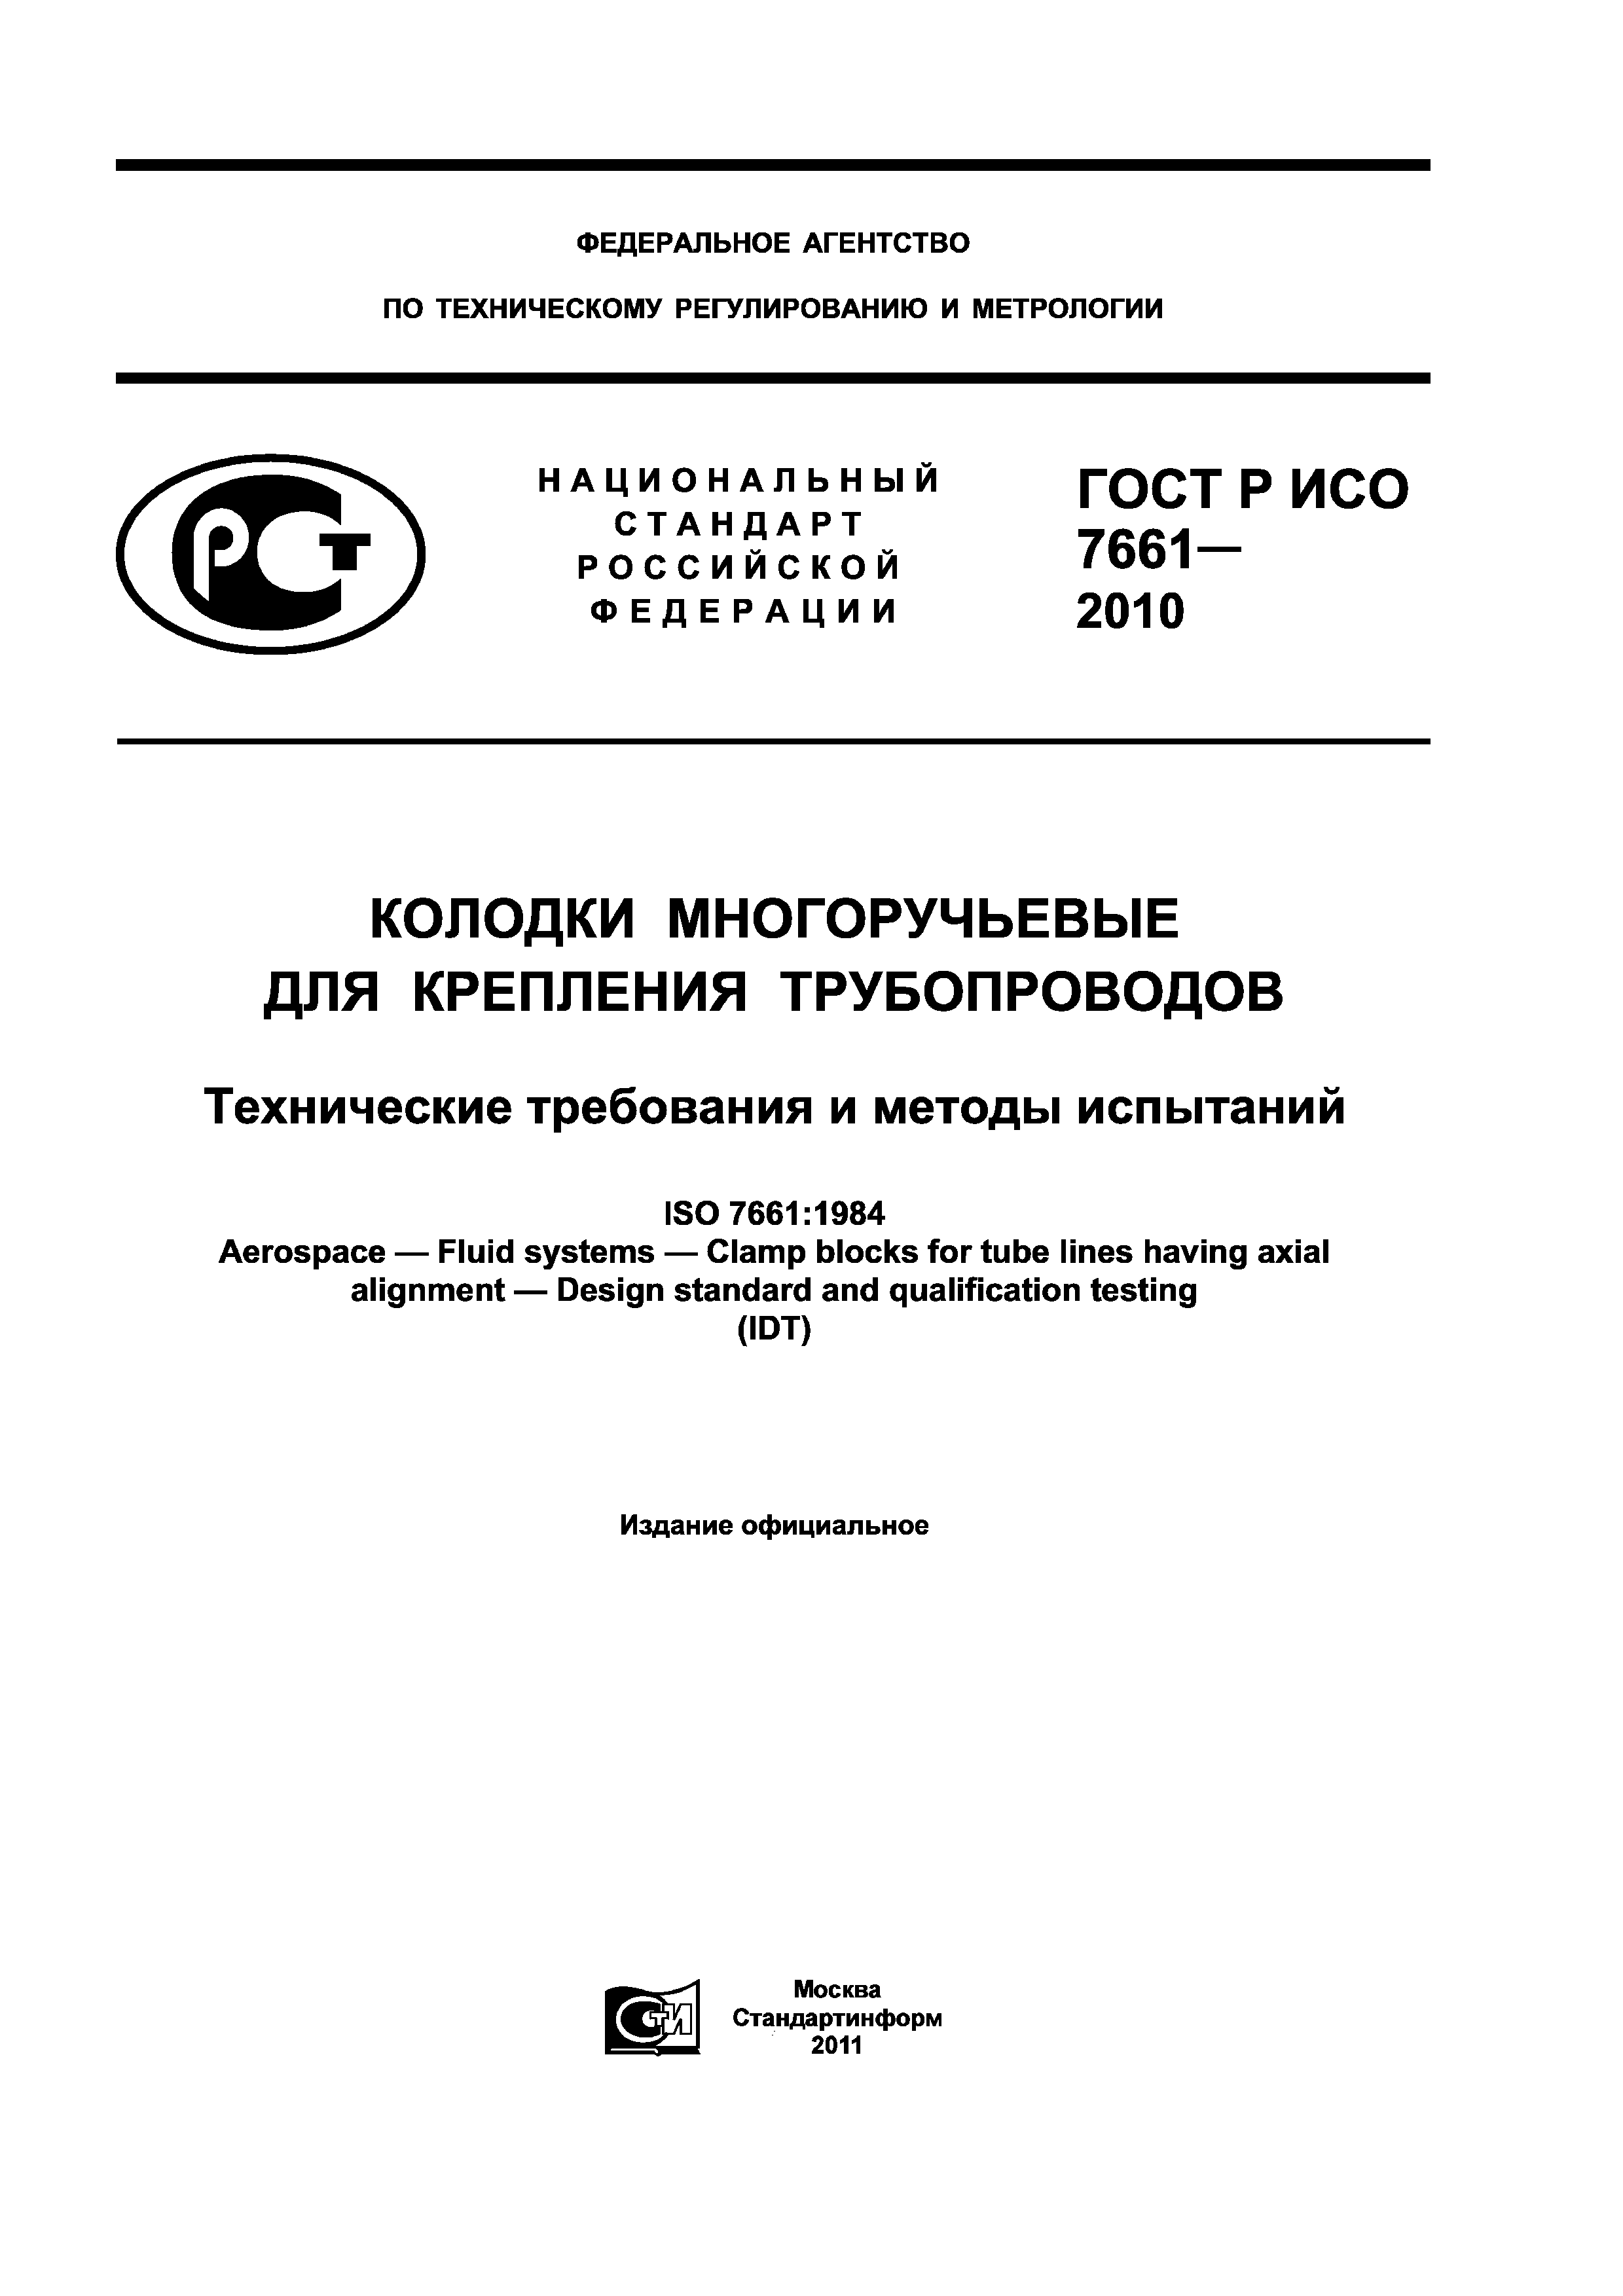 ГОСТ Р ИСО 7661-2010